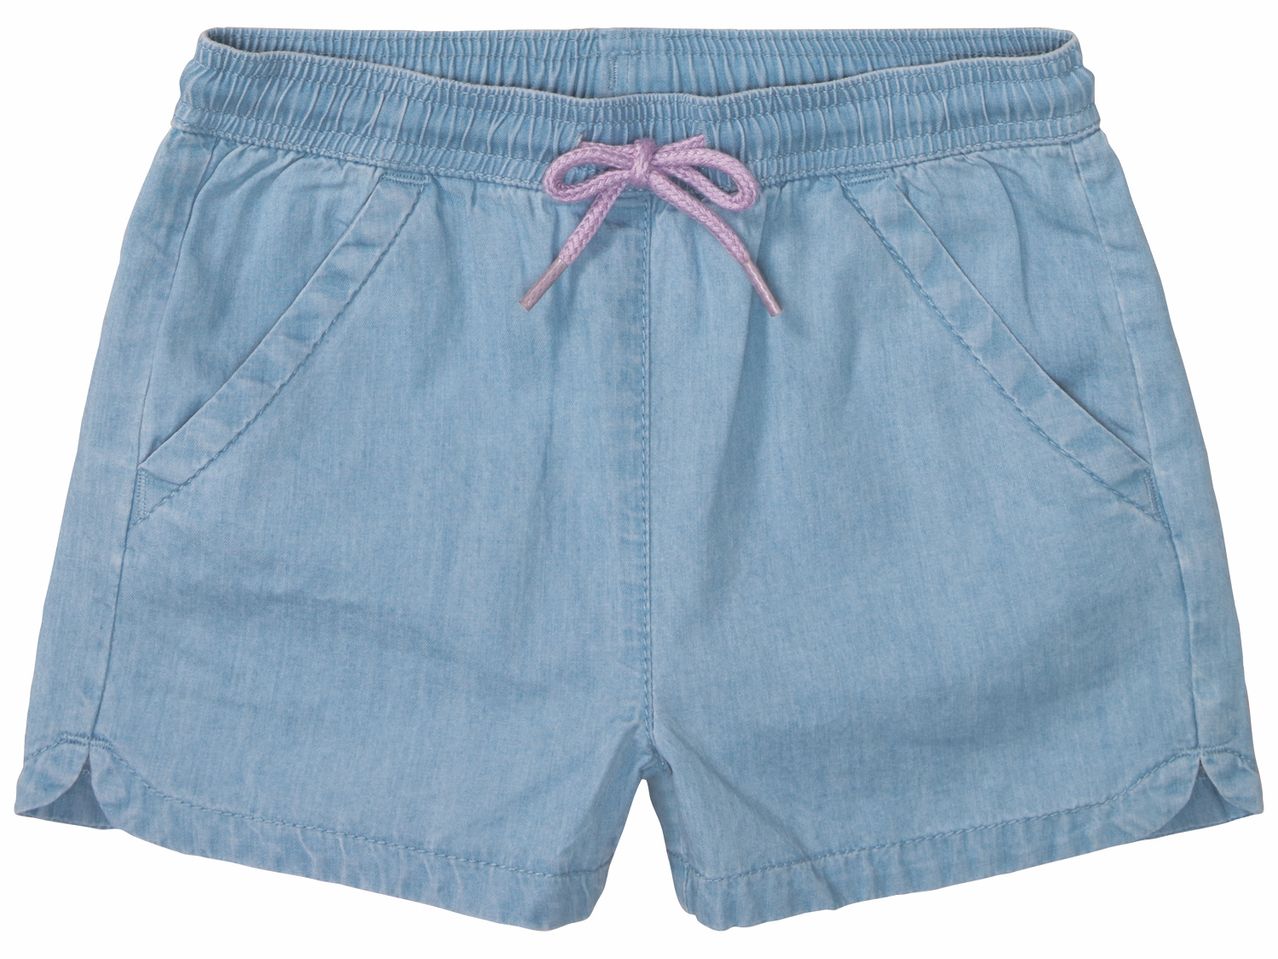 Shorts fille , prezzo 6.99 EUR 
Shorts fille 
- Du 2/4 ans au 6/8 ans selon modèle.
- ...